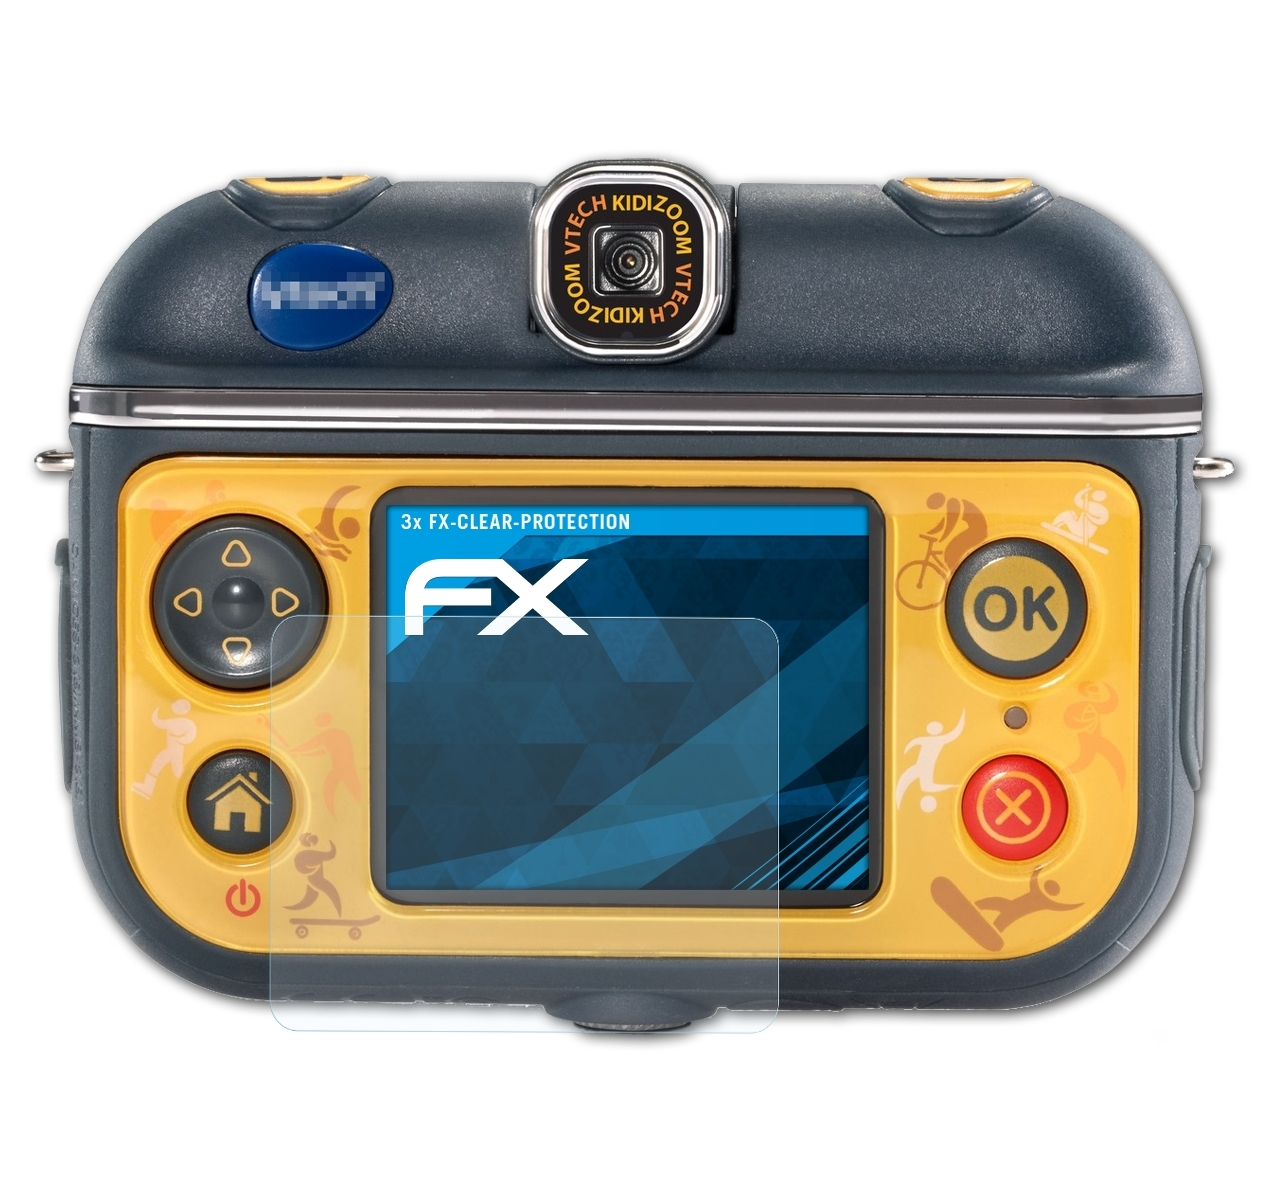 ATFOLIX 3x FX-Clear VTech Cam Action 180) Kidizoom Displayschutz(für